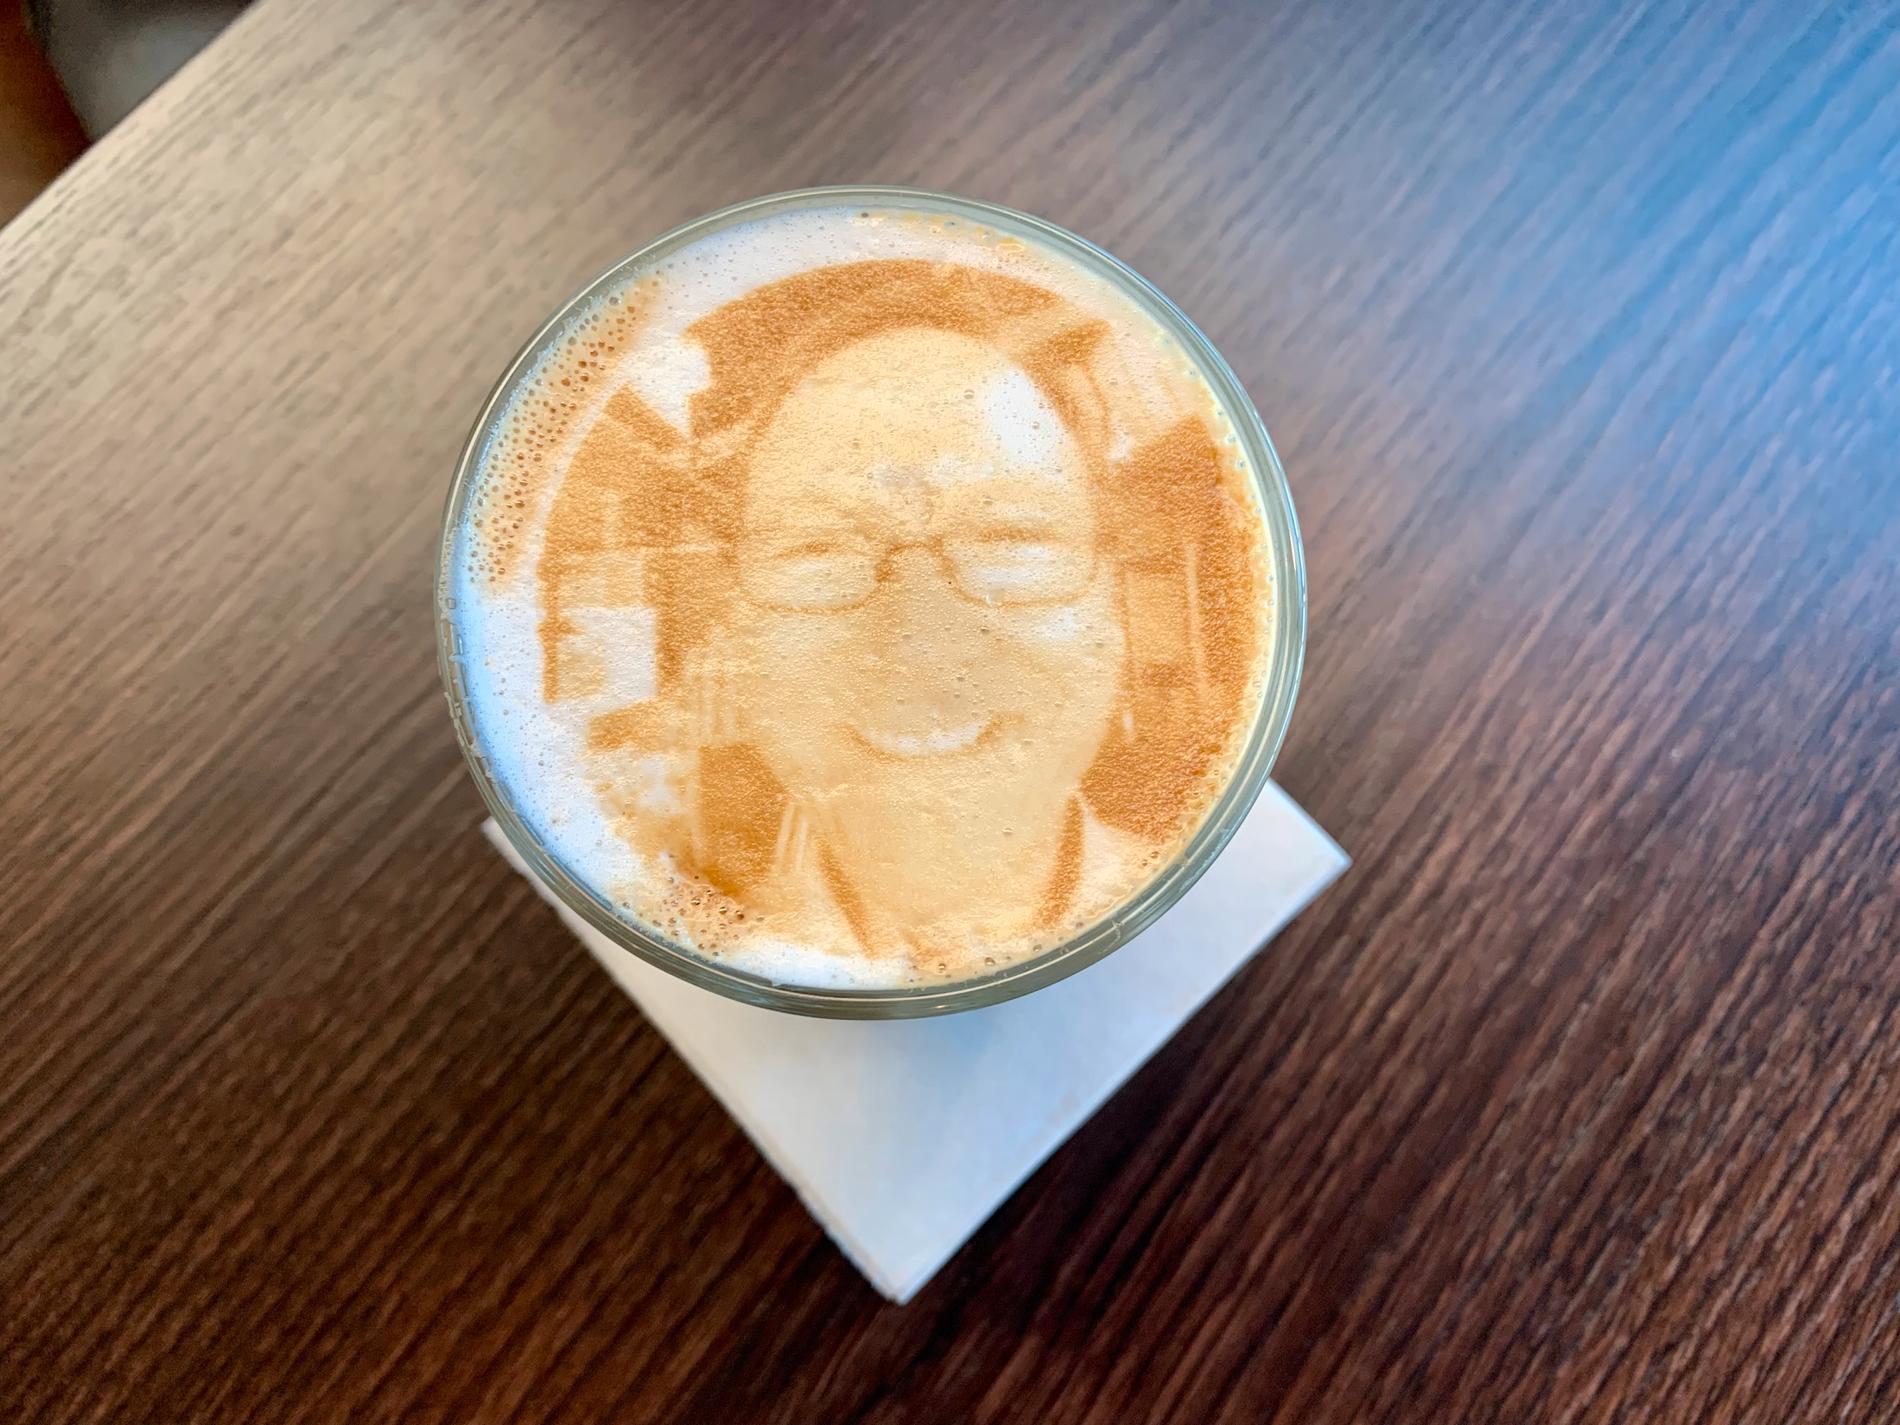 På Roya i Sandnes fikk Karlsen servert en kaffe med et portrett av seg selv på.